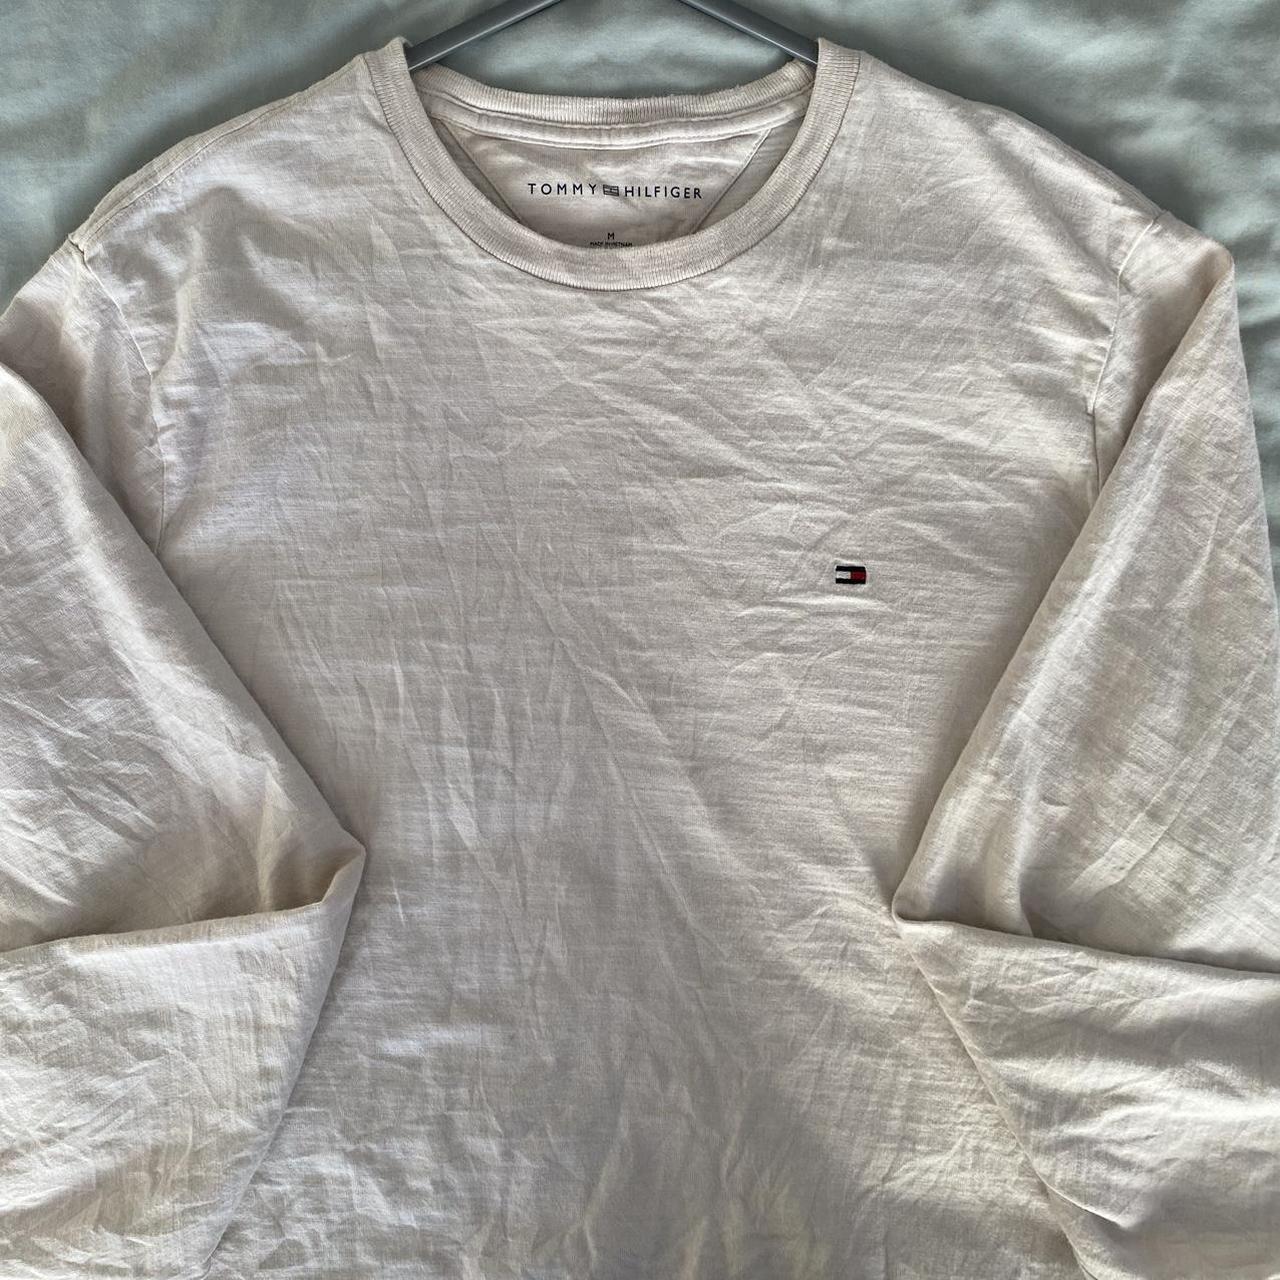 Tommy Hilfiger Women's White Sweatshirt | Depop